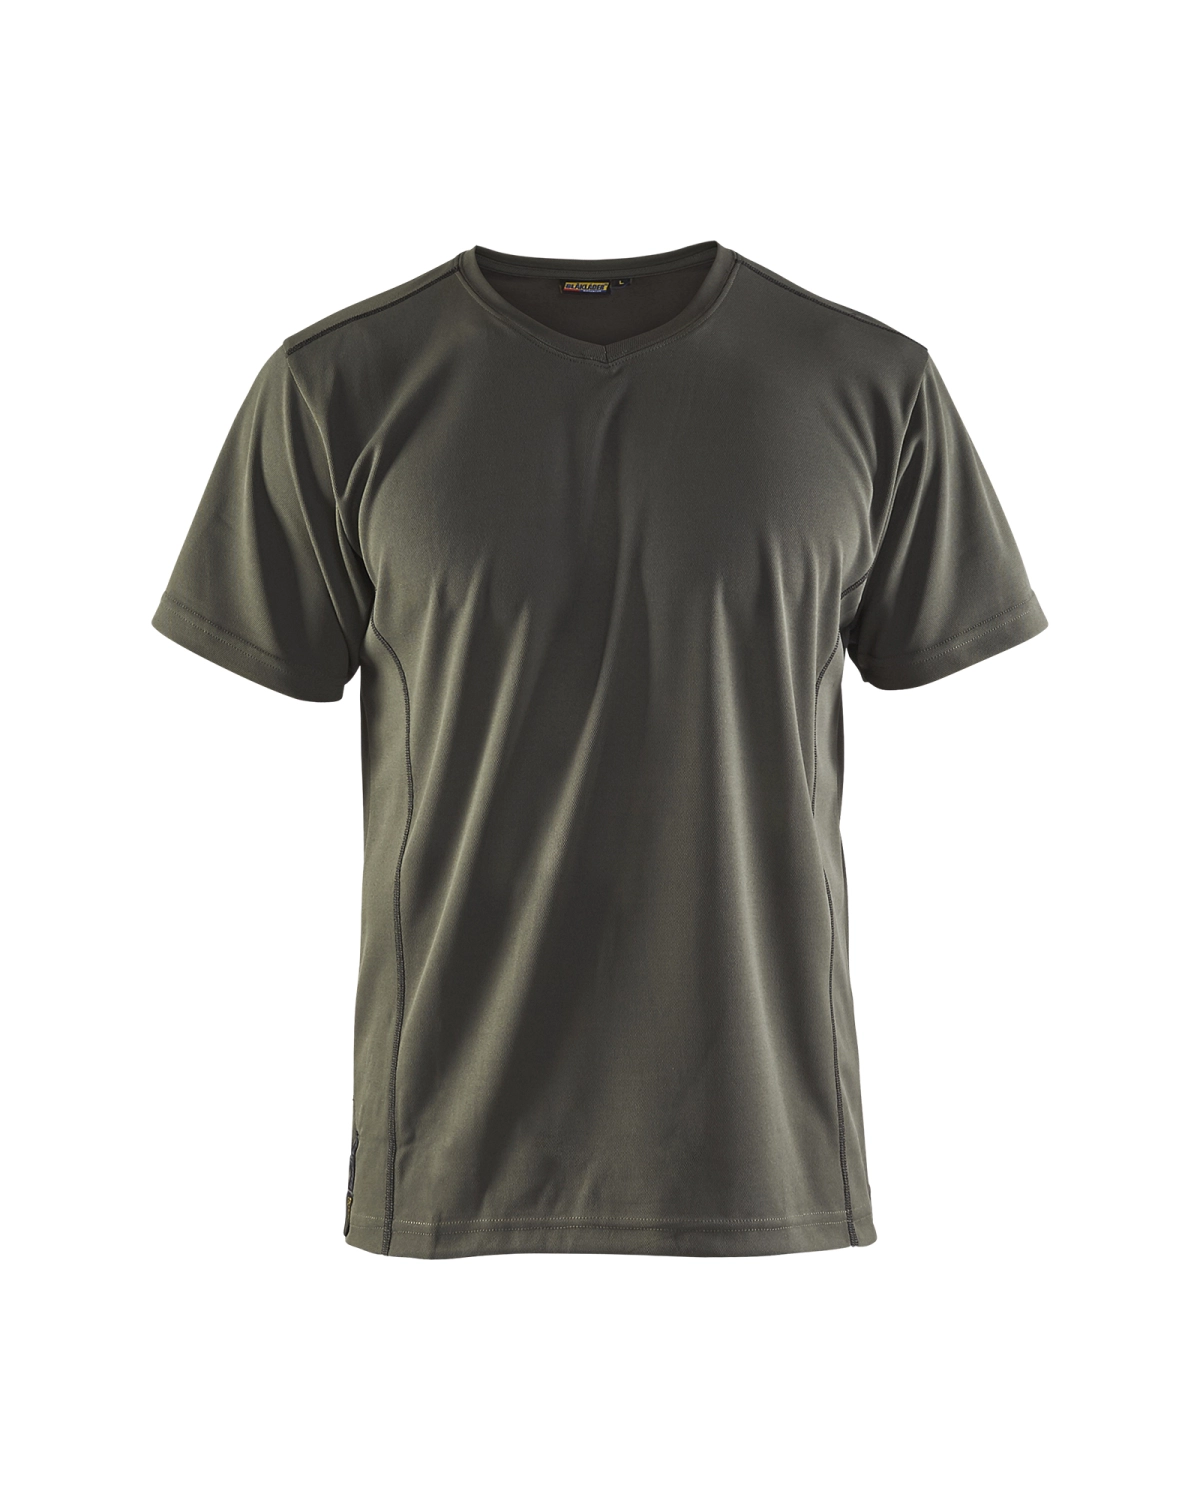 Blåkläder 3323 UV t-shirt - army groen - XL